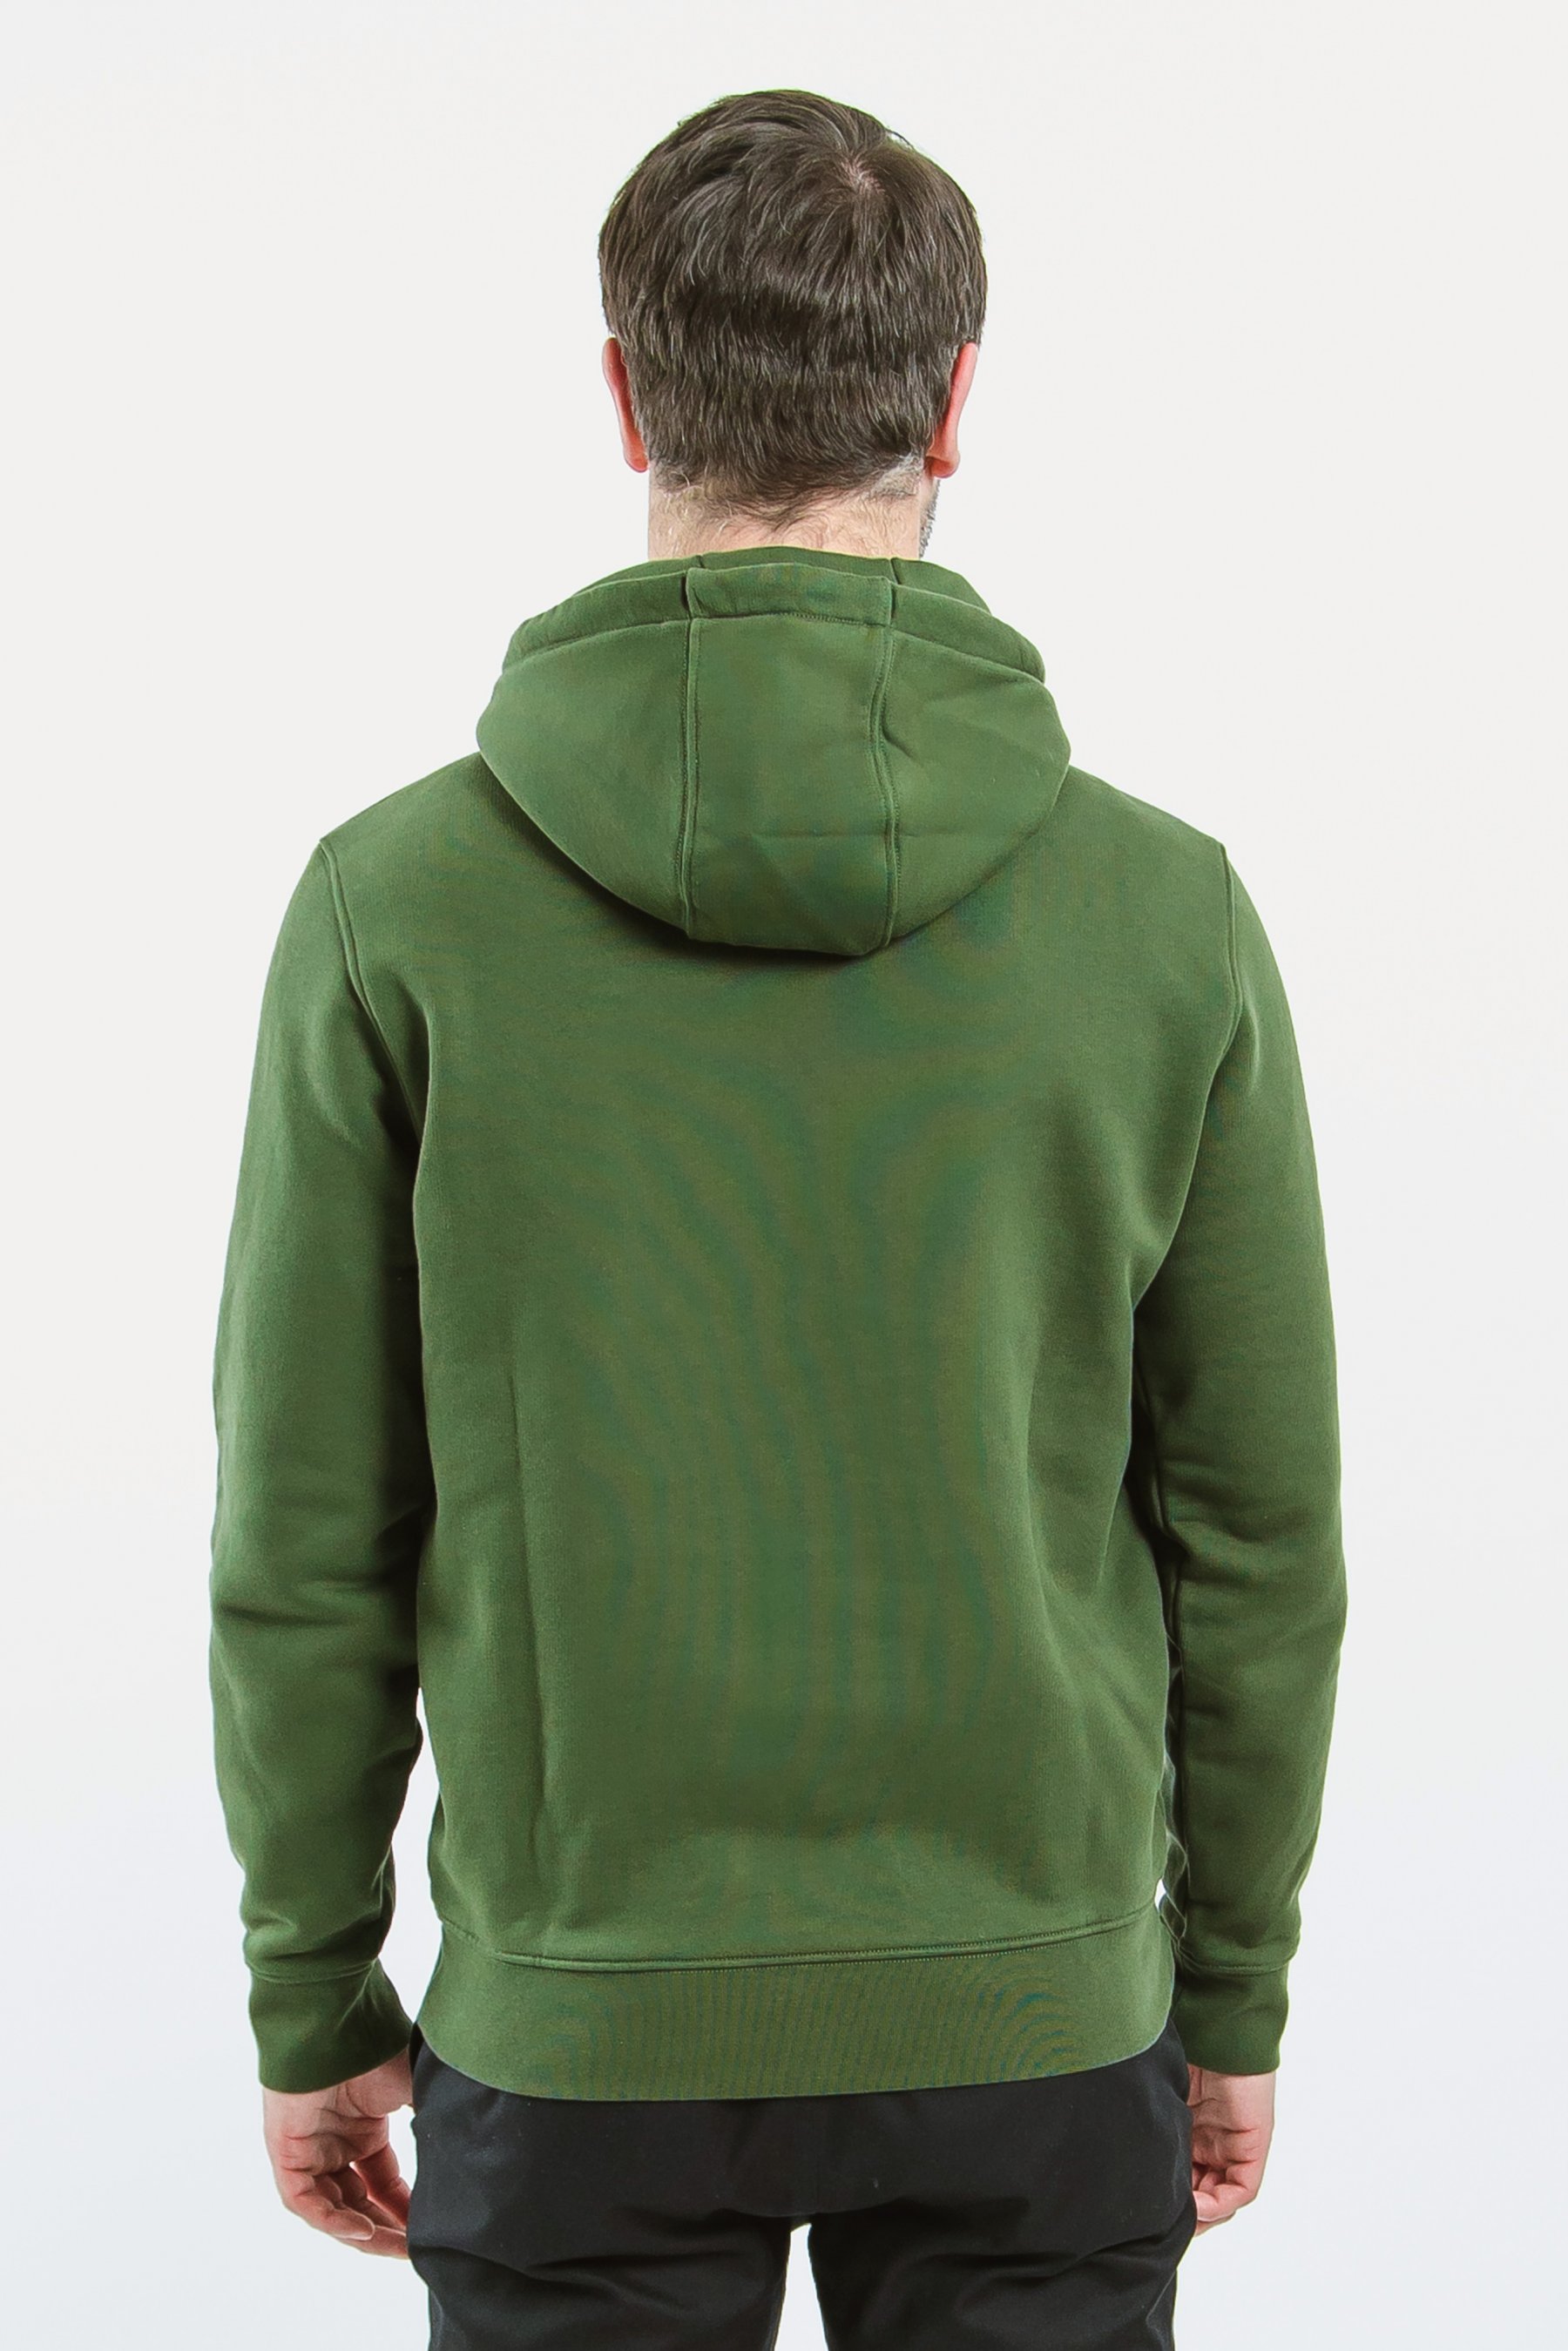 Sudadera con capucha 100% algodón - verde